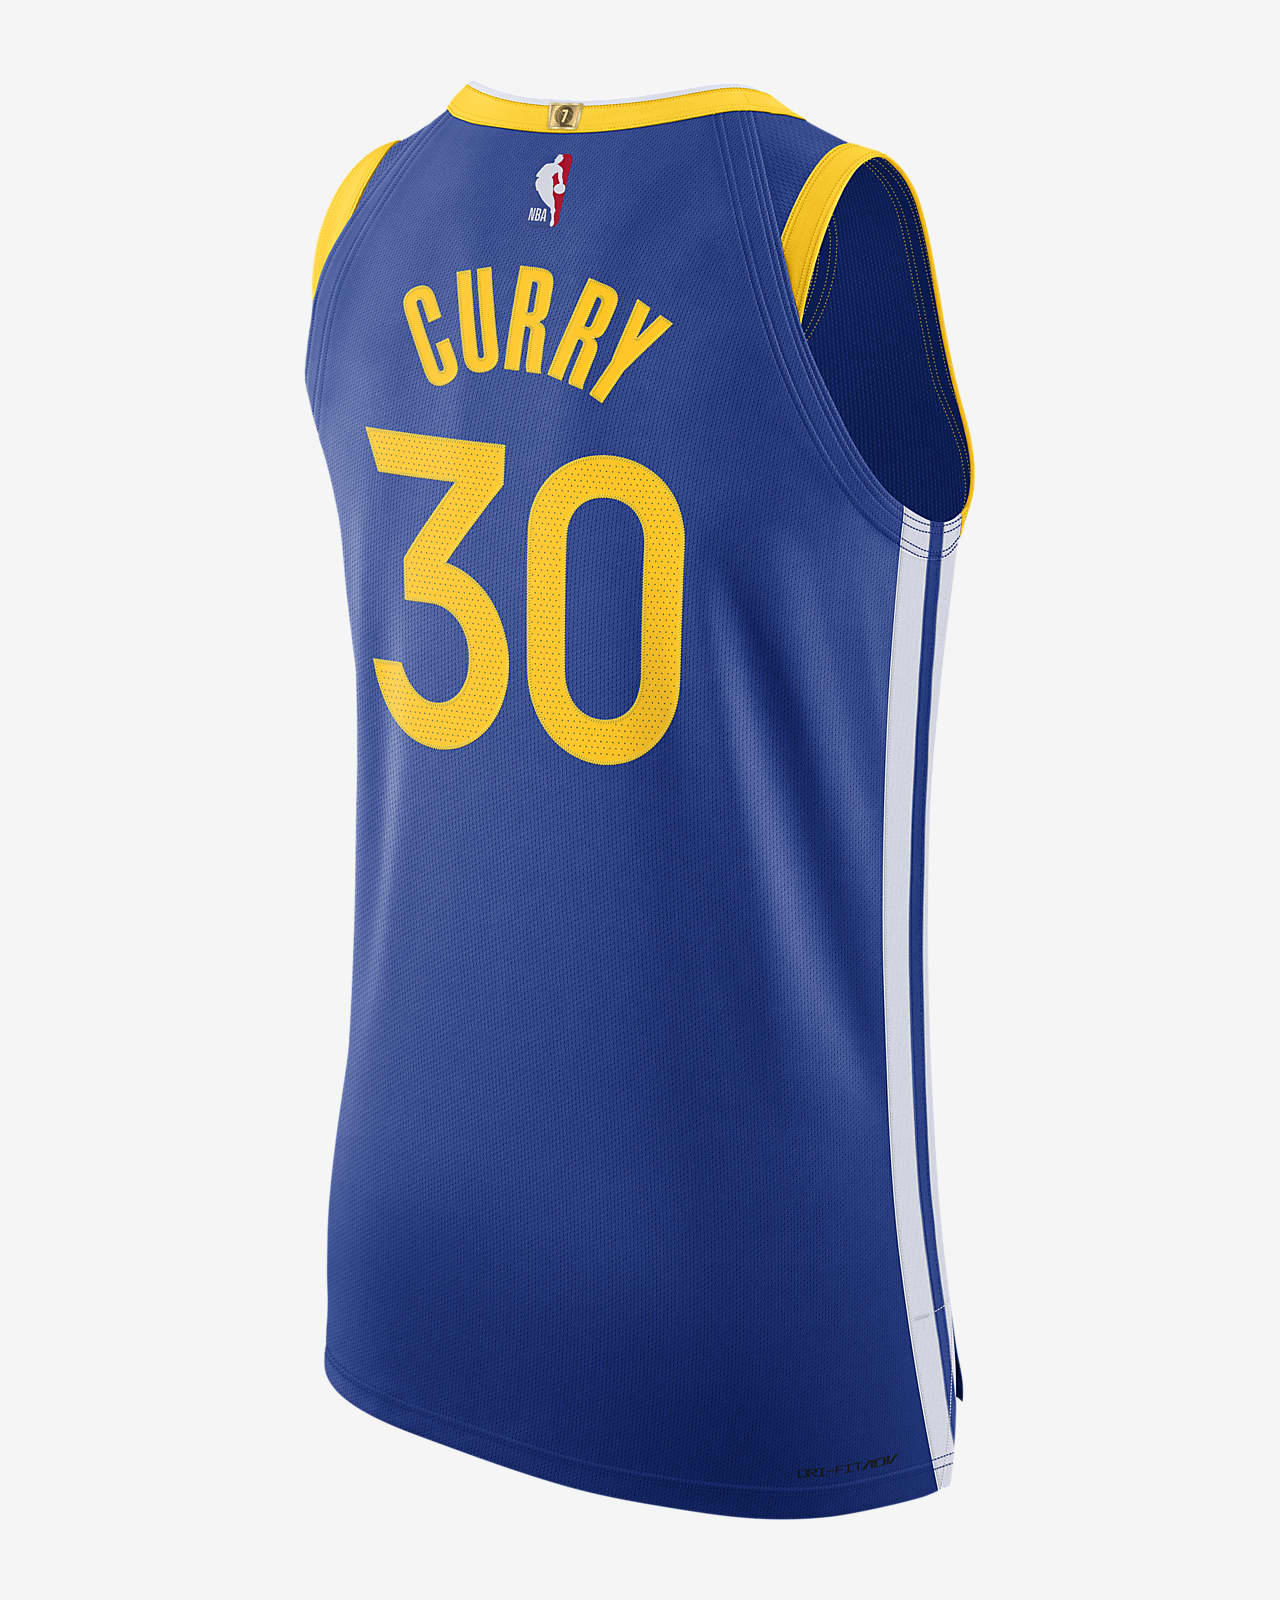 Fraternidad Parque jurásico Arne Stephen Curry Warriors Icon Edition 2020 Camiseta Nike de la NBA Authentic.  Nike ES